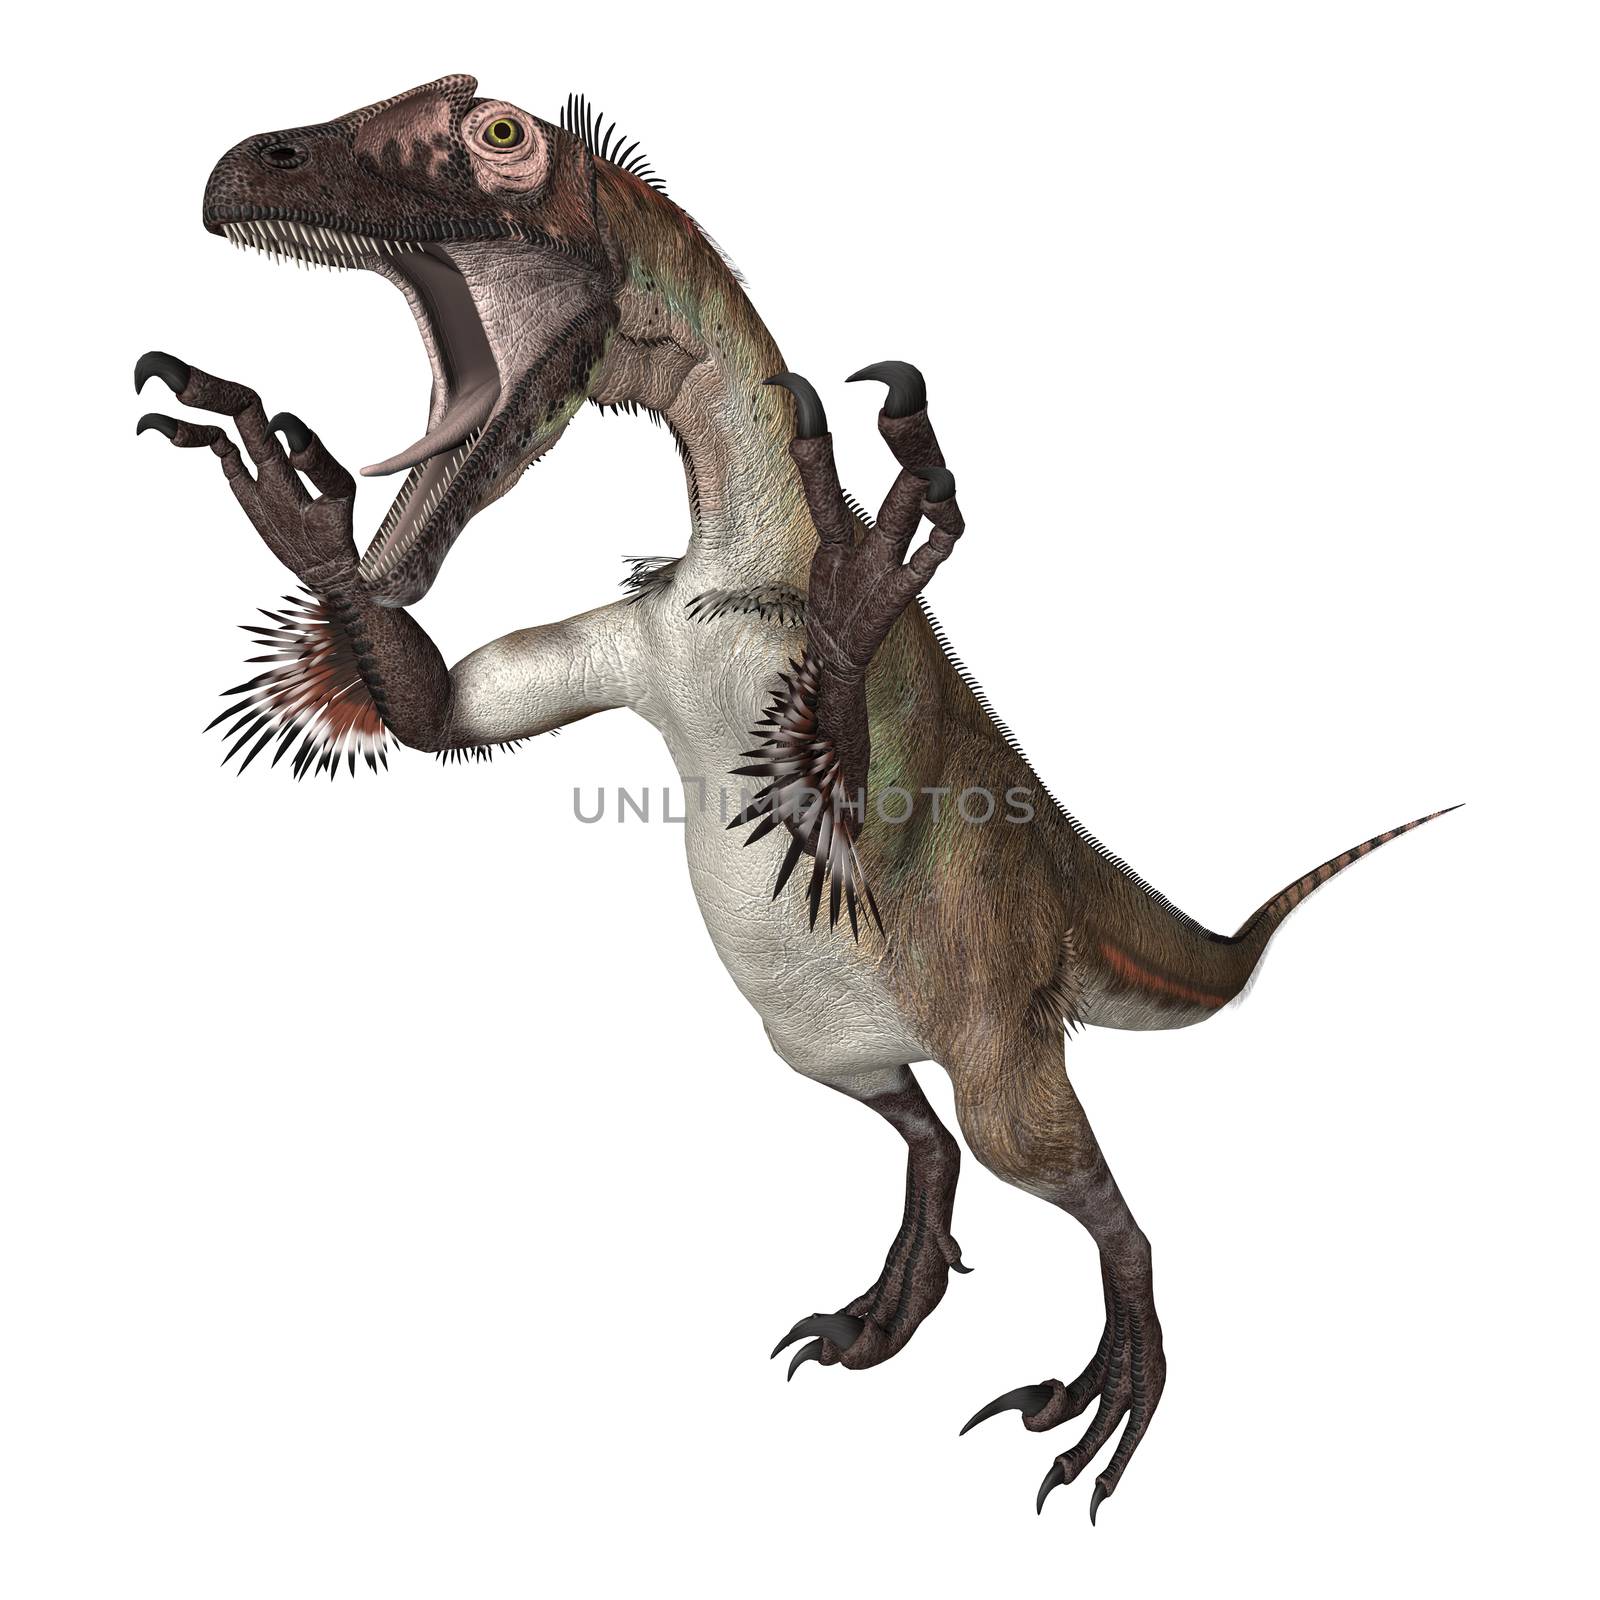 3D digital render of a dinosaur utahraptor isolated on white background